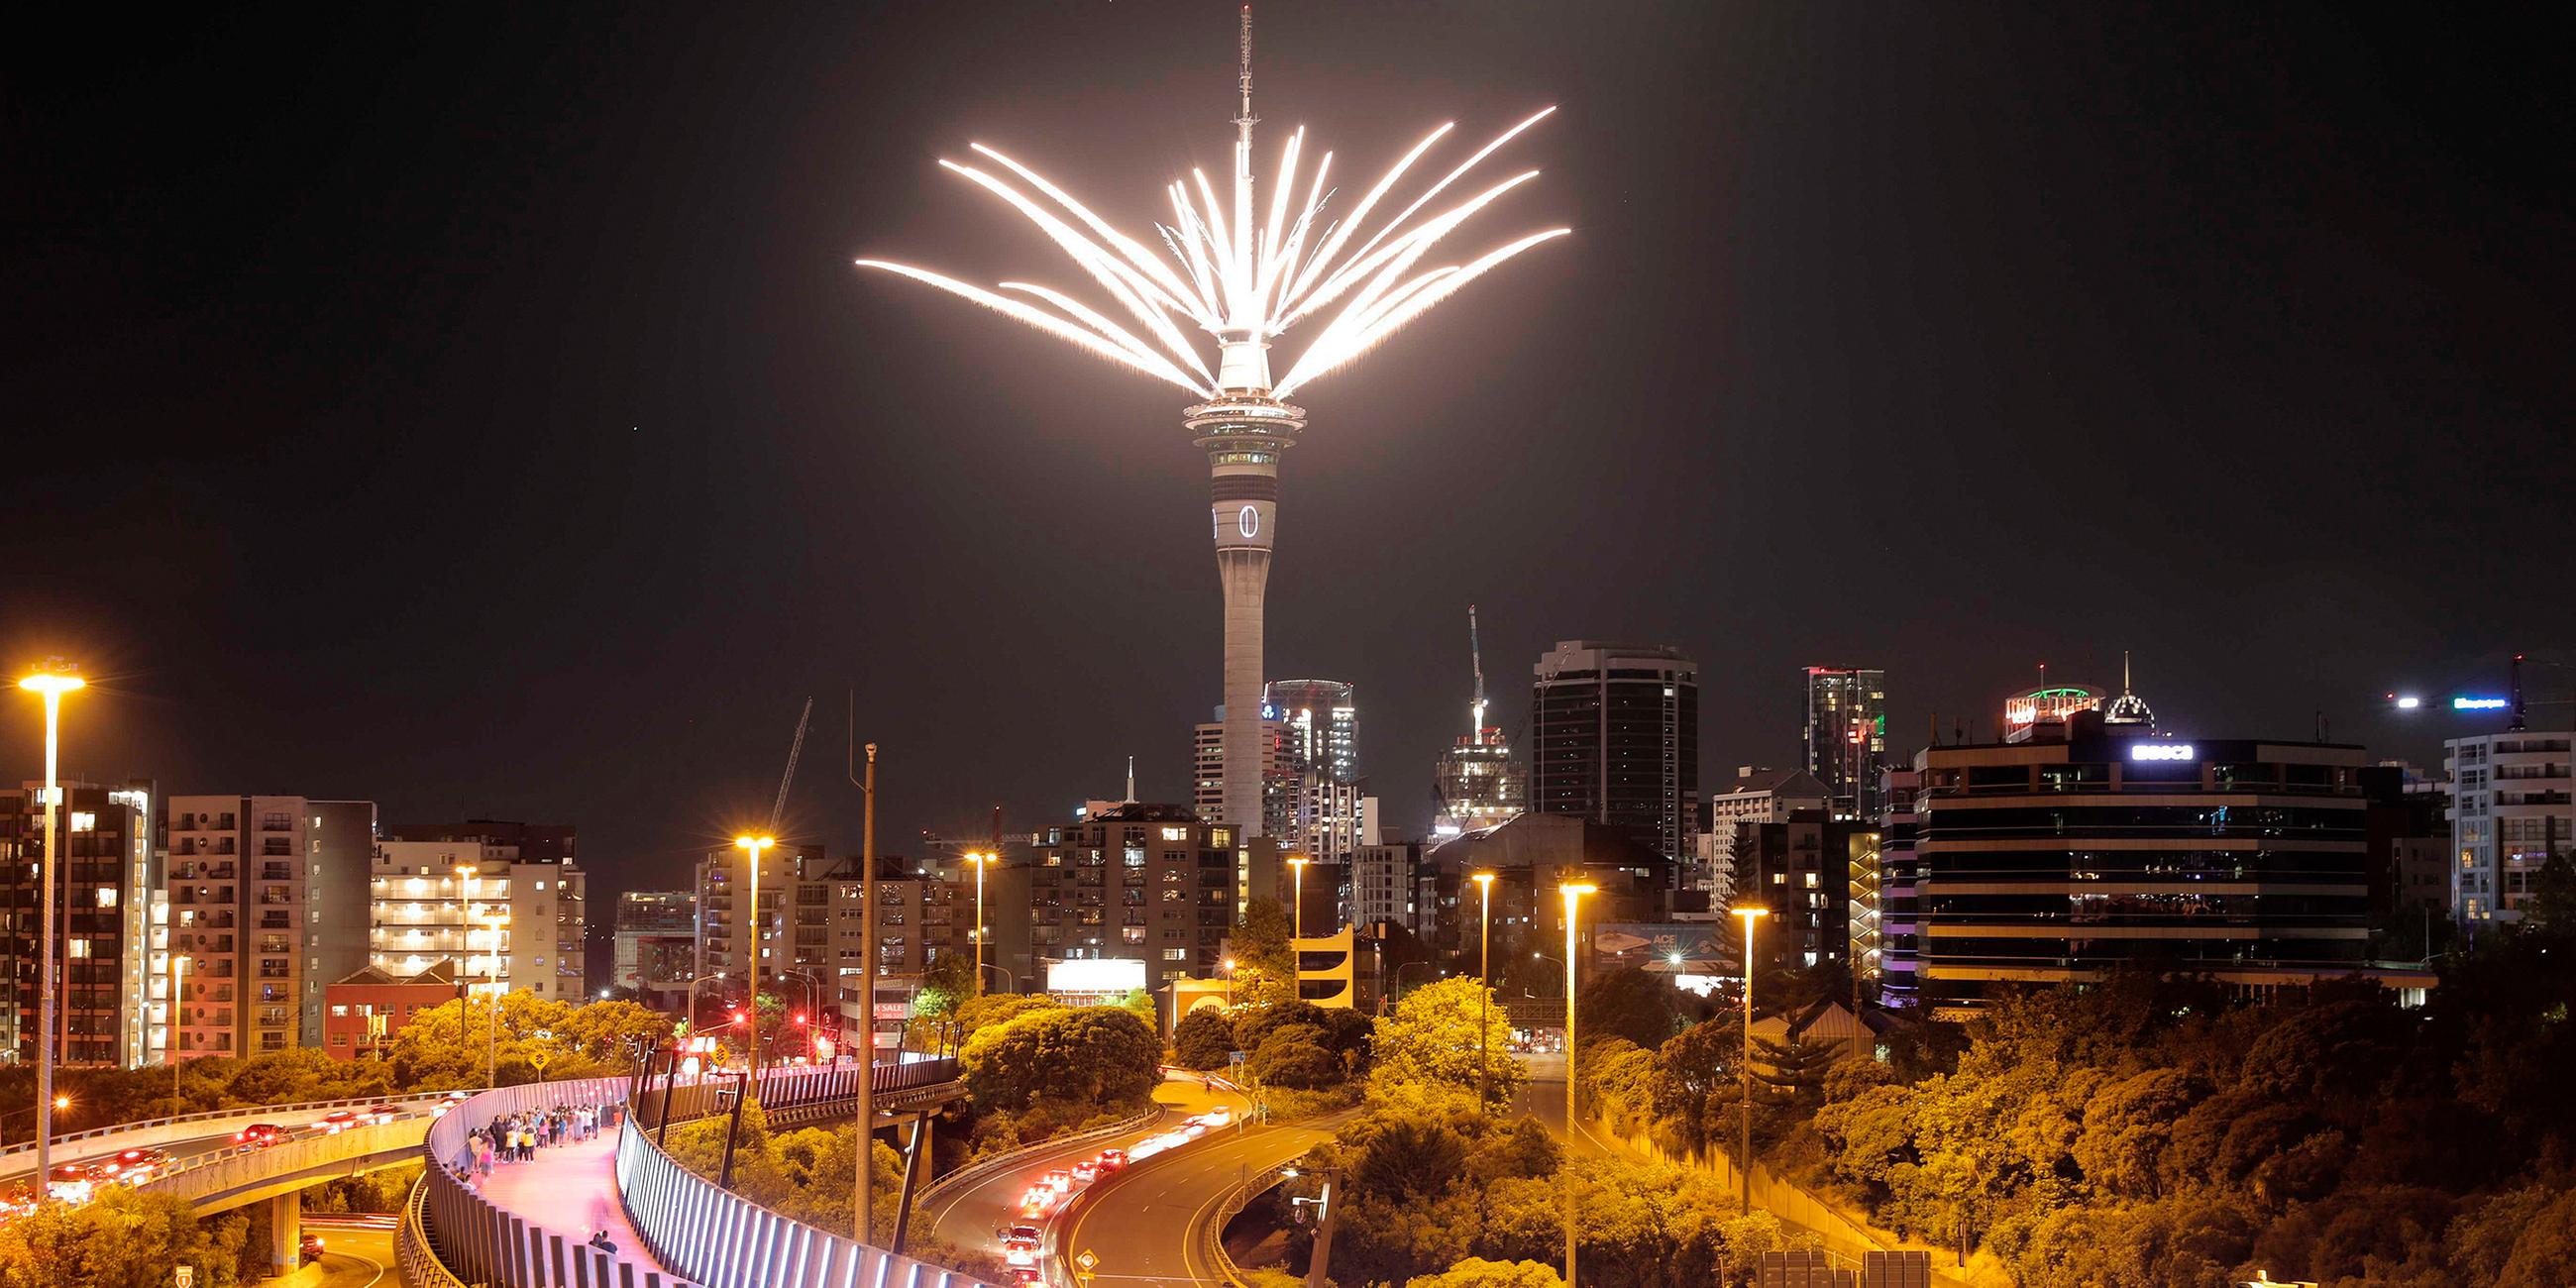 Feuerwerk auf dem Sky Tower in Auckland, Neuseeland